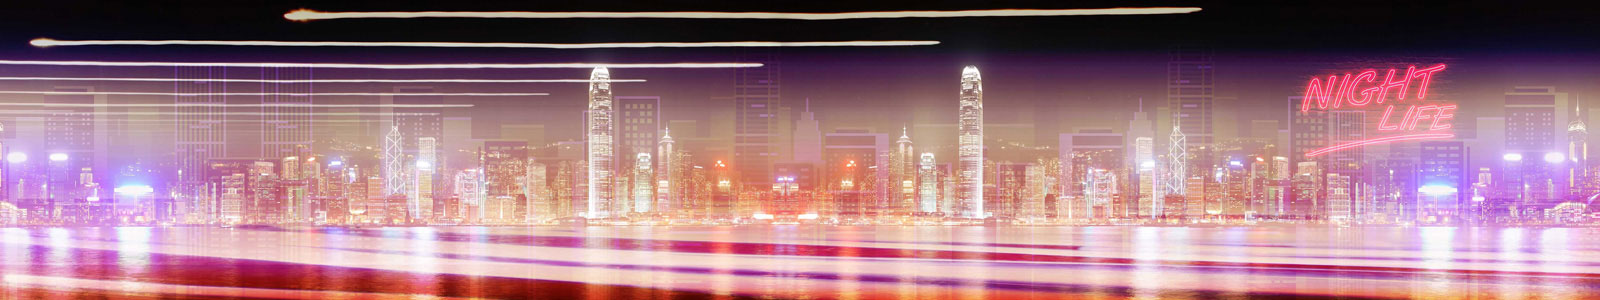 №6182 - Панорама ночного мегаполиса